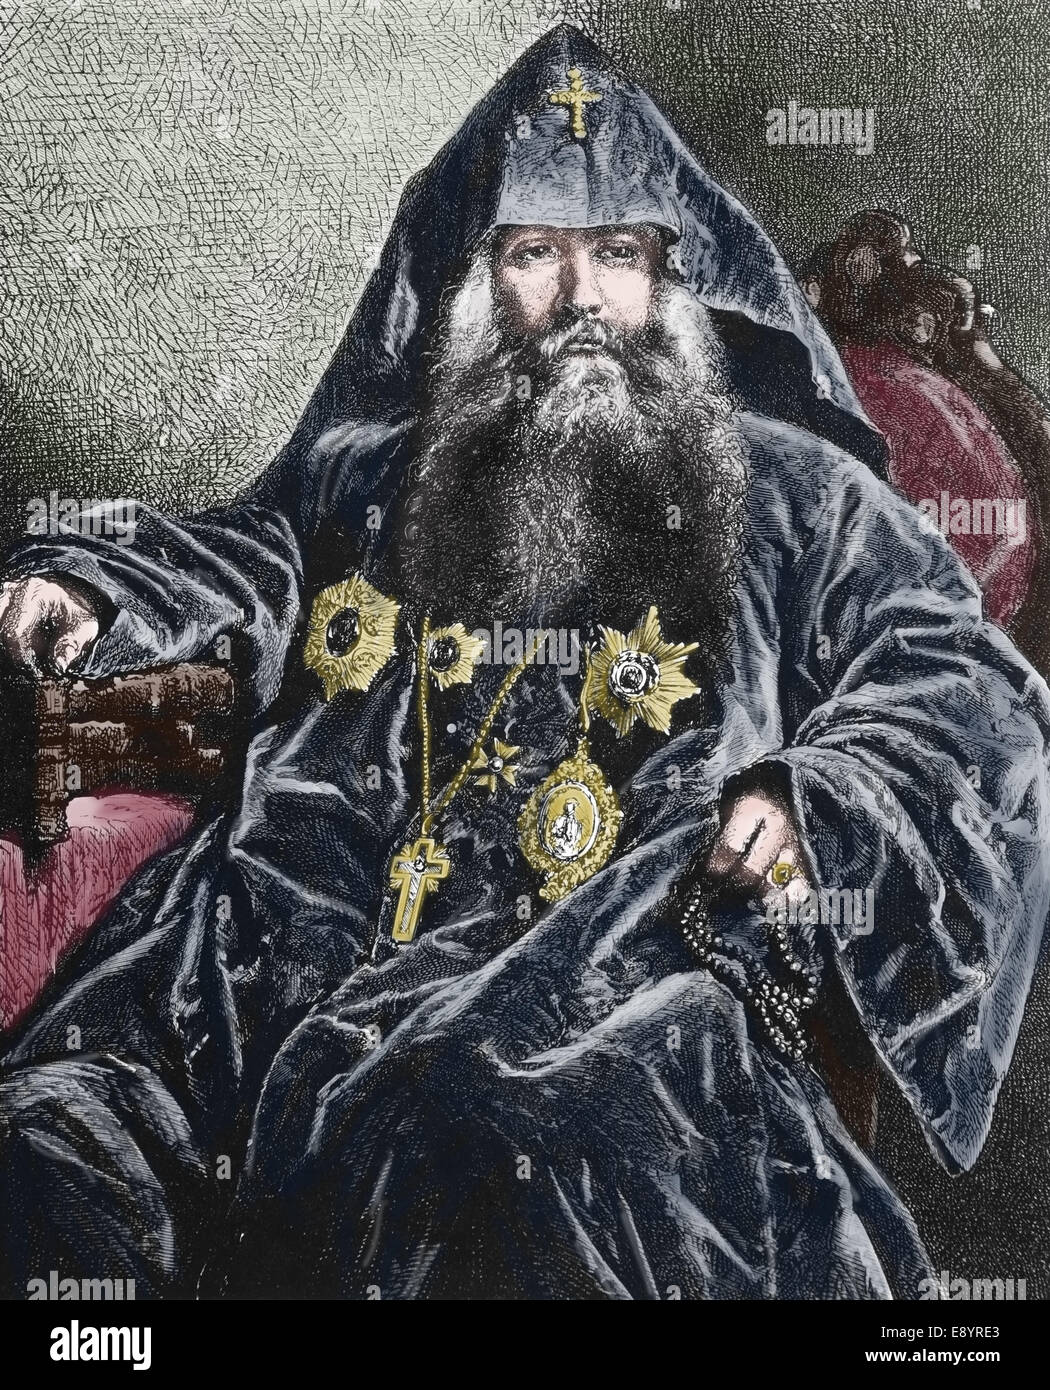 La Repubblica di Uzbekistan. Asia. Il Patriarca Armeno, 1870. Incisione del XIX secolo. Colorazione successiva. Foto Stock